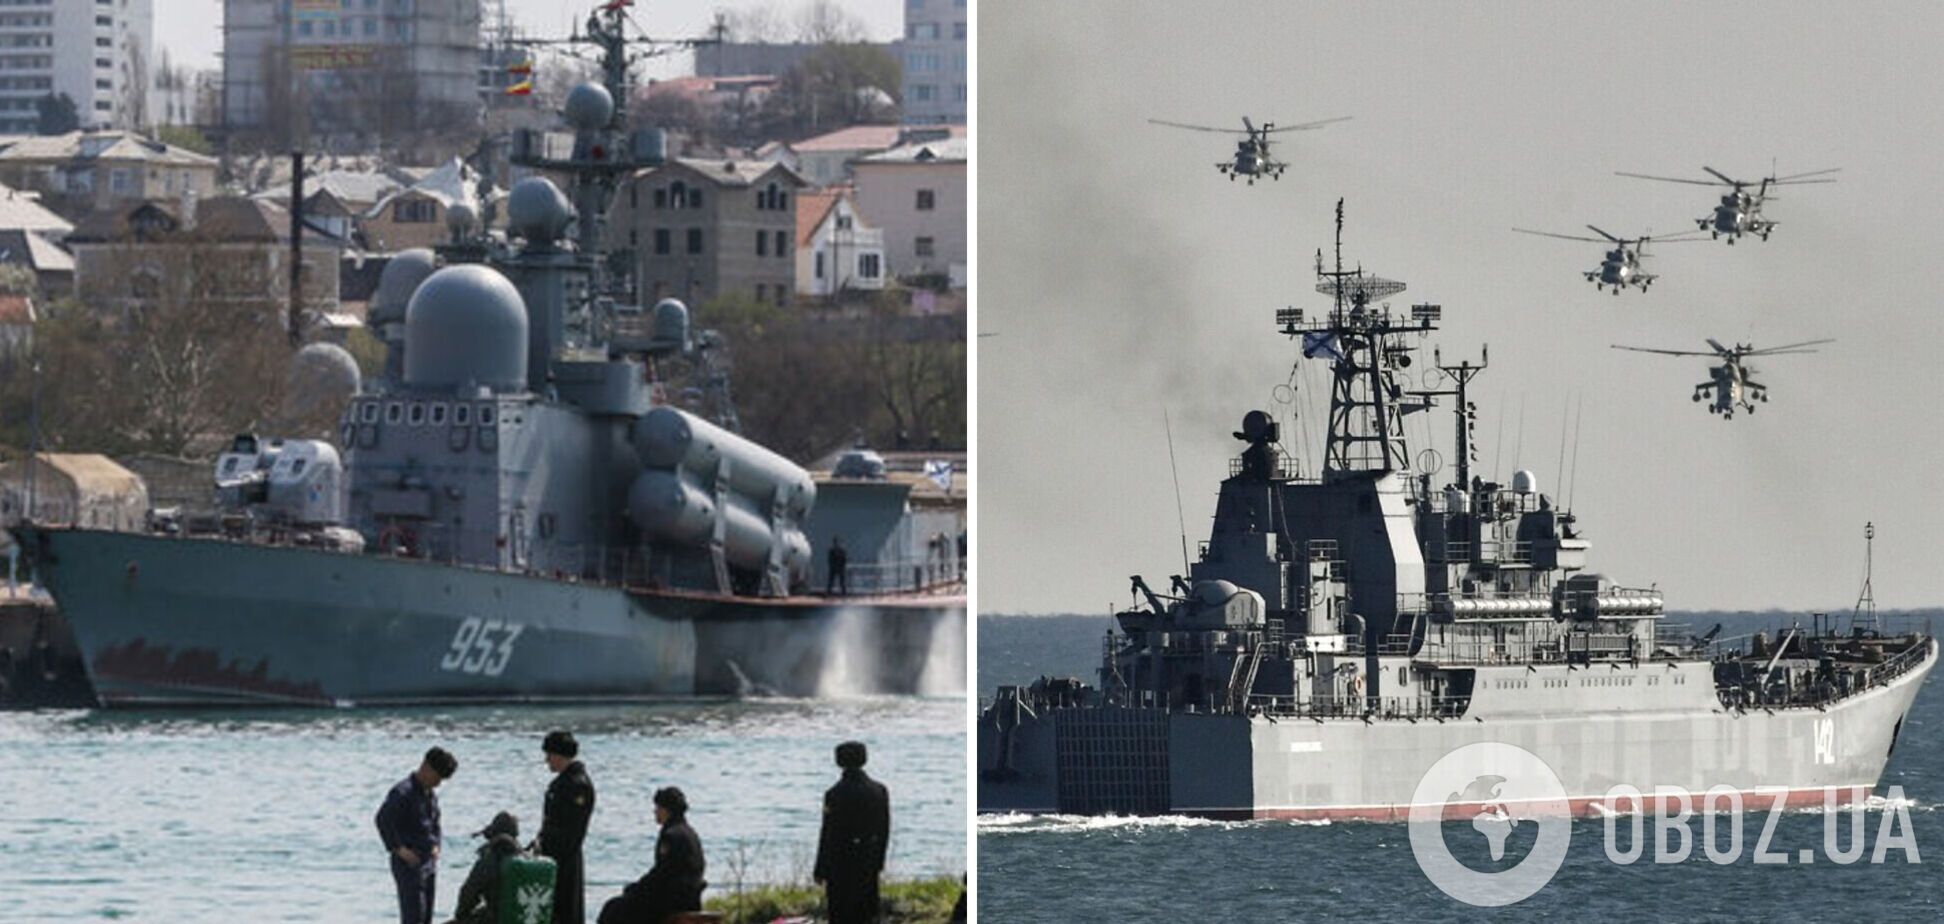 Чорноморський флот РФ має проблеми, проведення публічних заходів малоймовірне – розвідка Британії